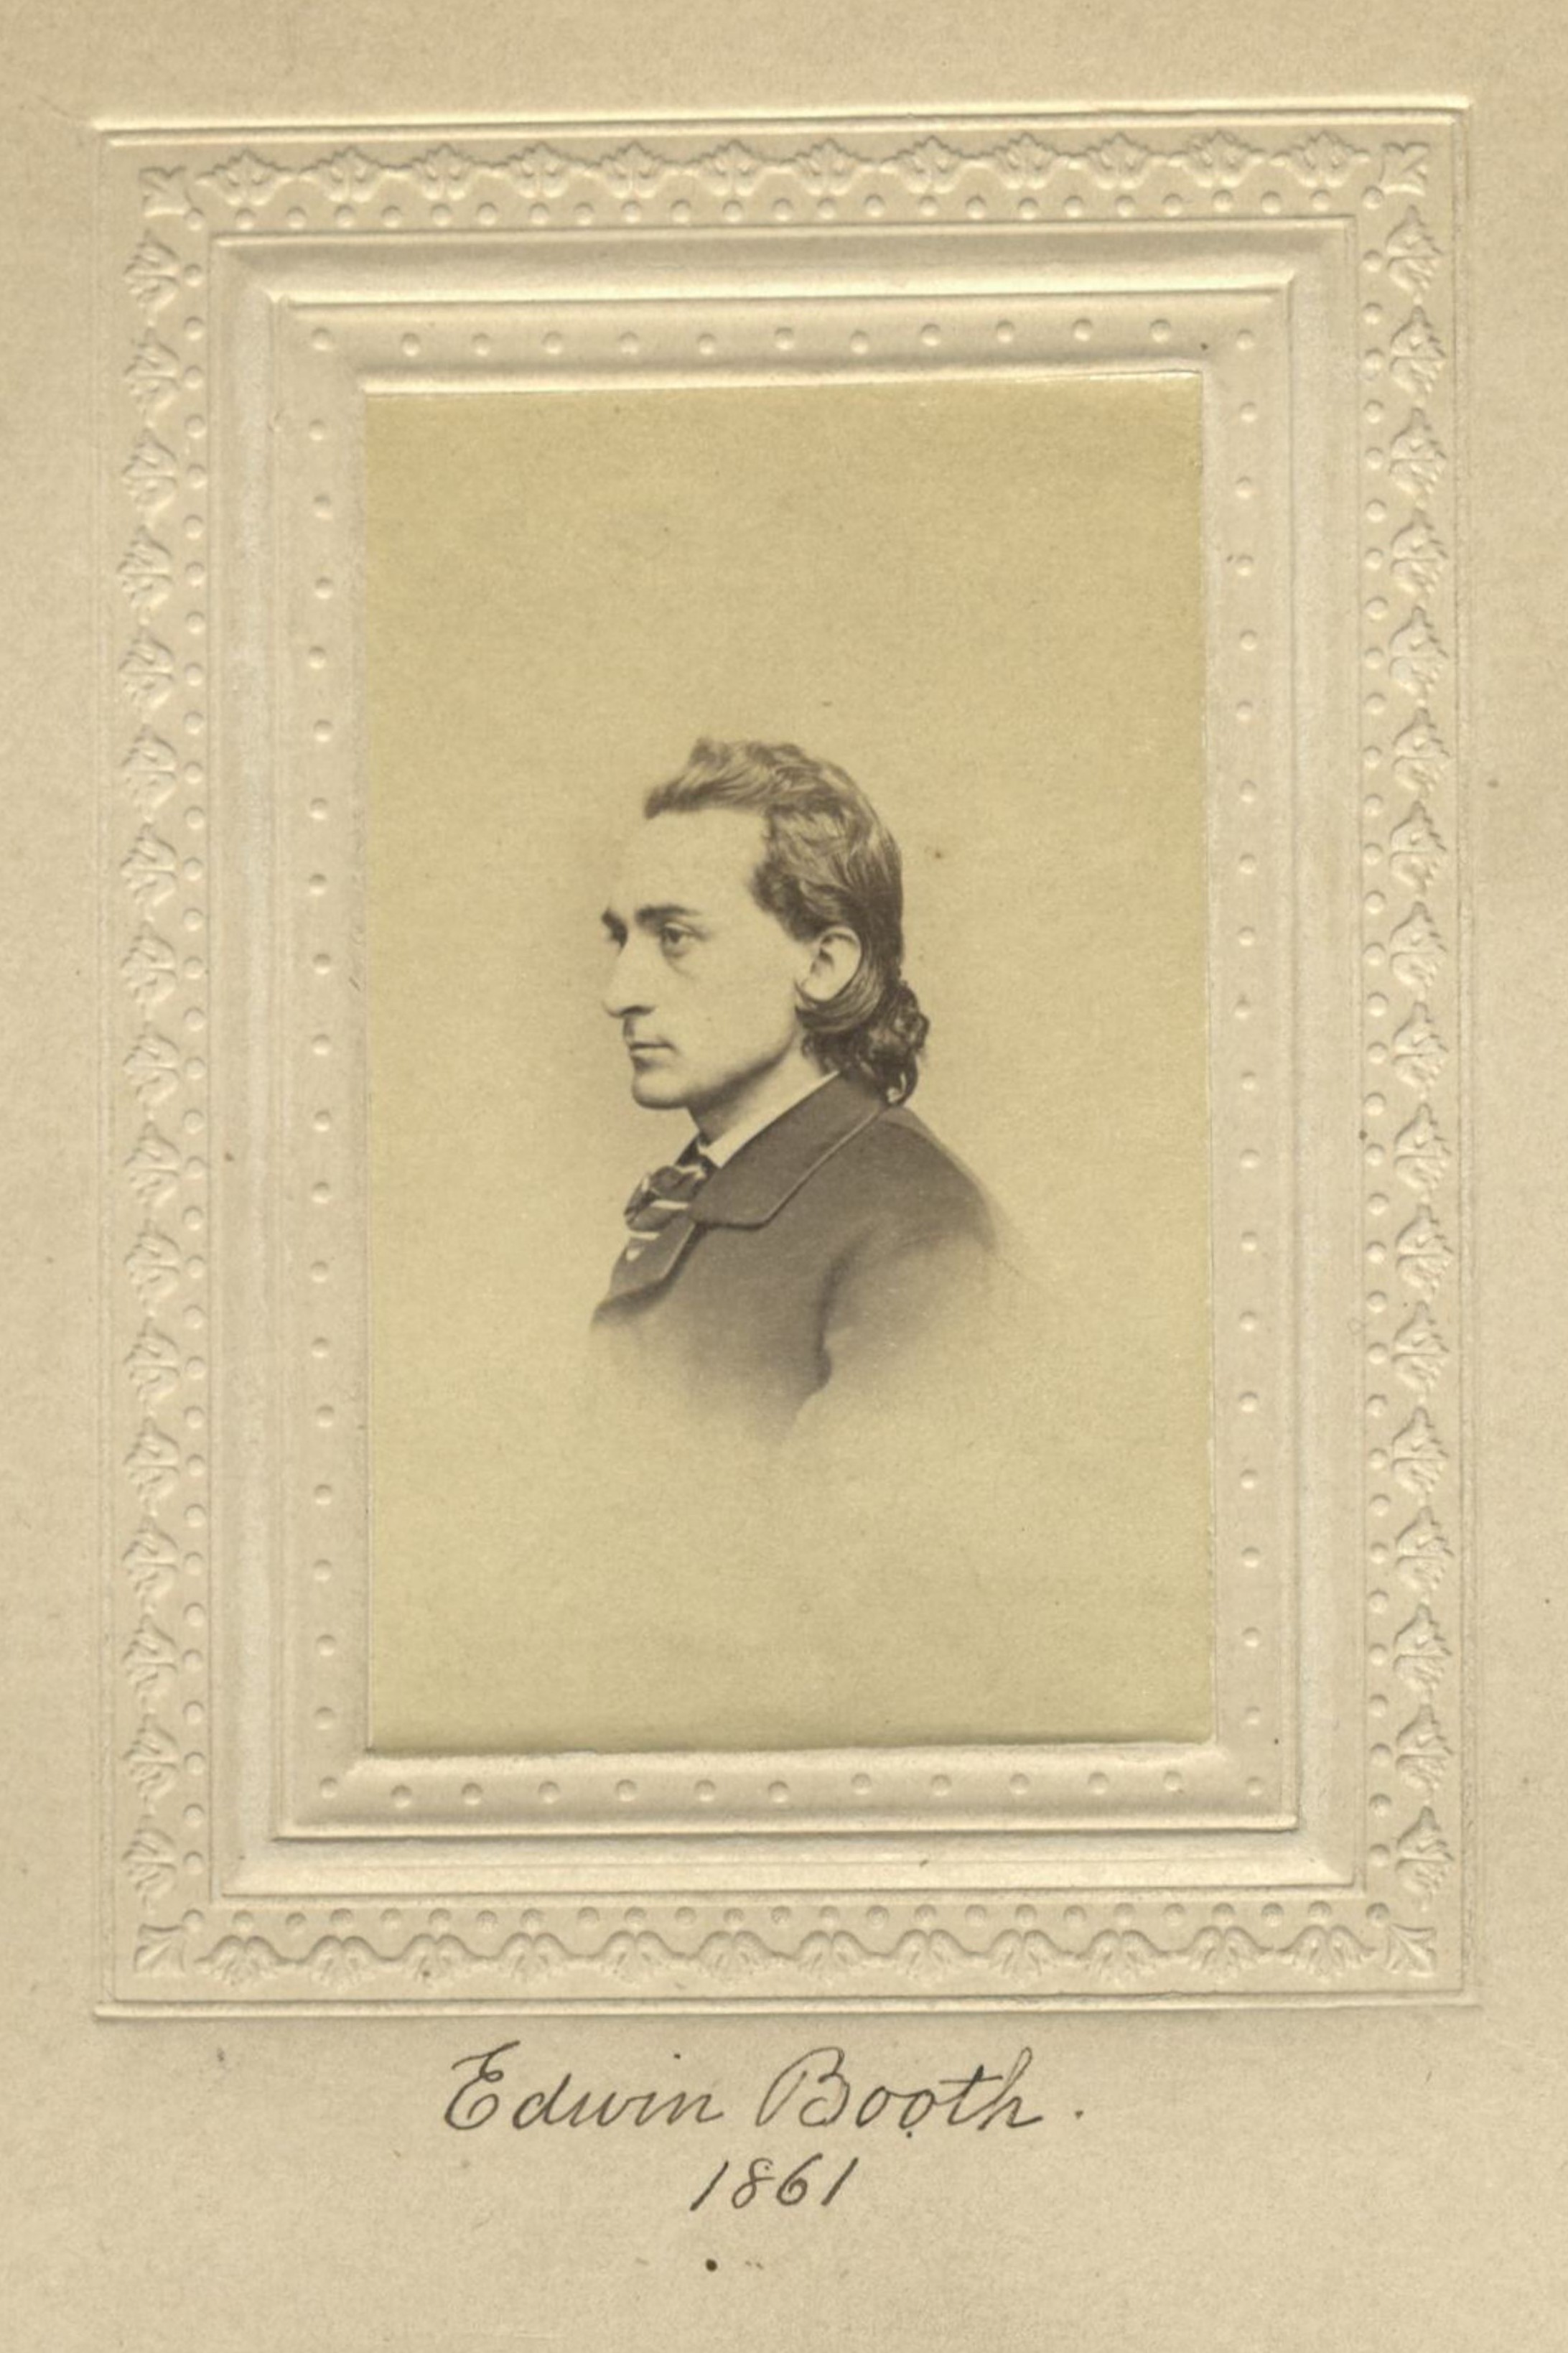 Member portrait of Edwin Booth